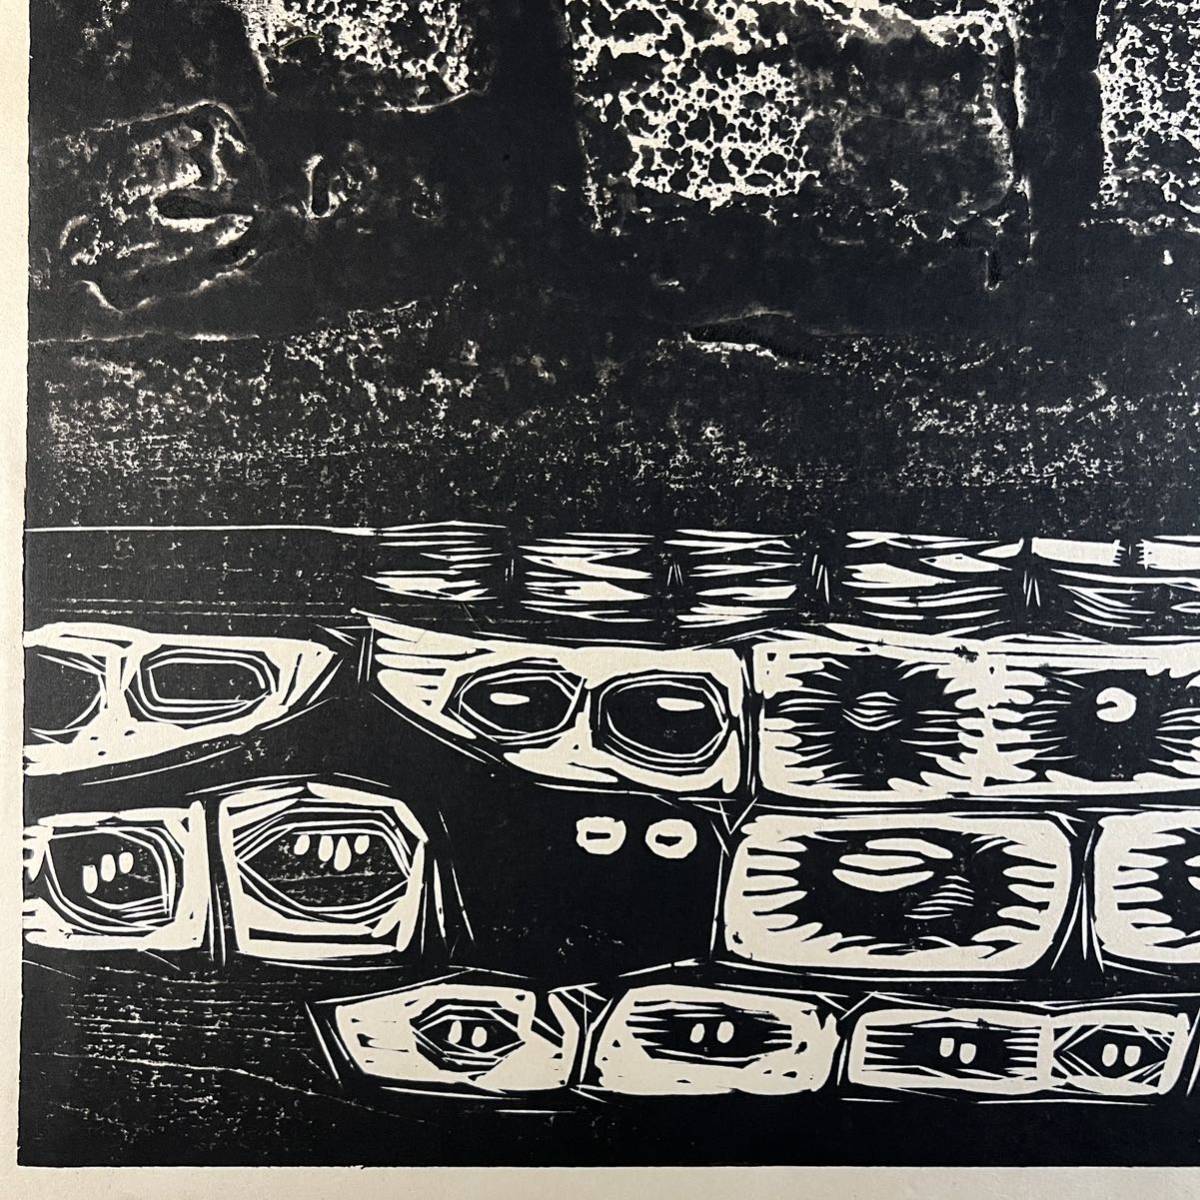 真作 手島圭三郎 『残雪』 木版画 1964年1月10日作 道版展会員 直筆サイン入り 直筆裏書きあり 絵本作家 版画_画像7